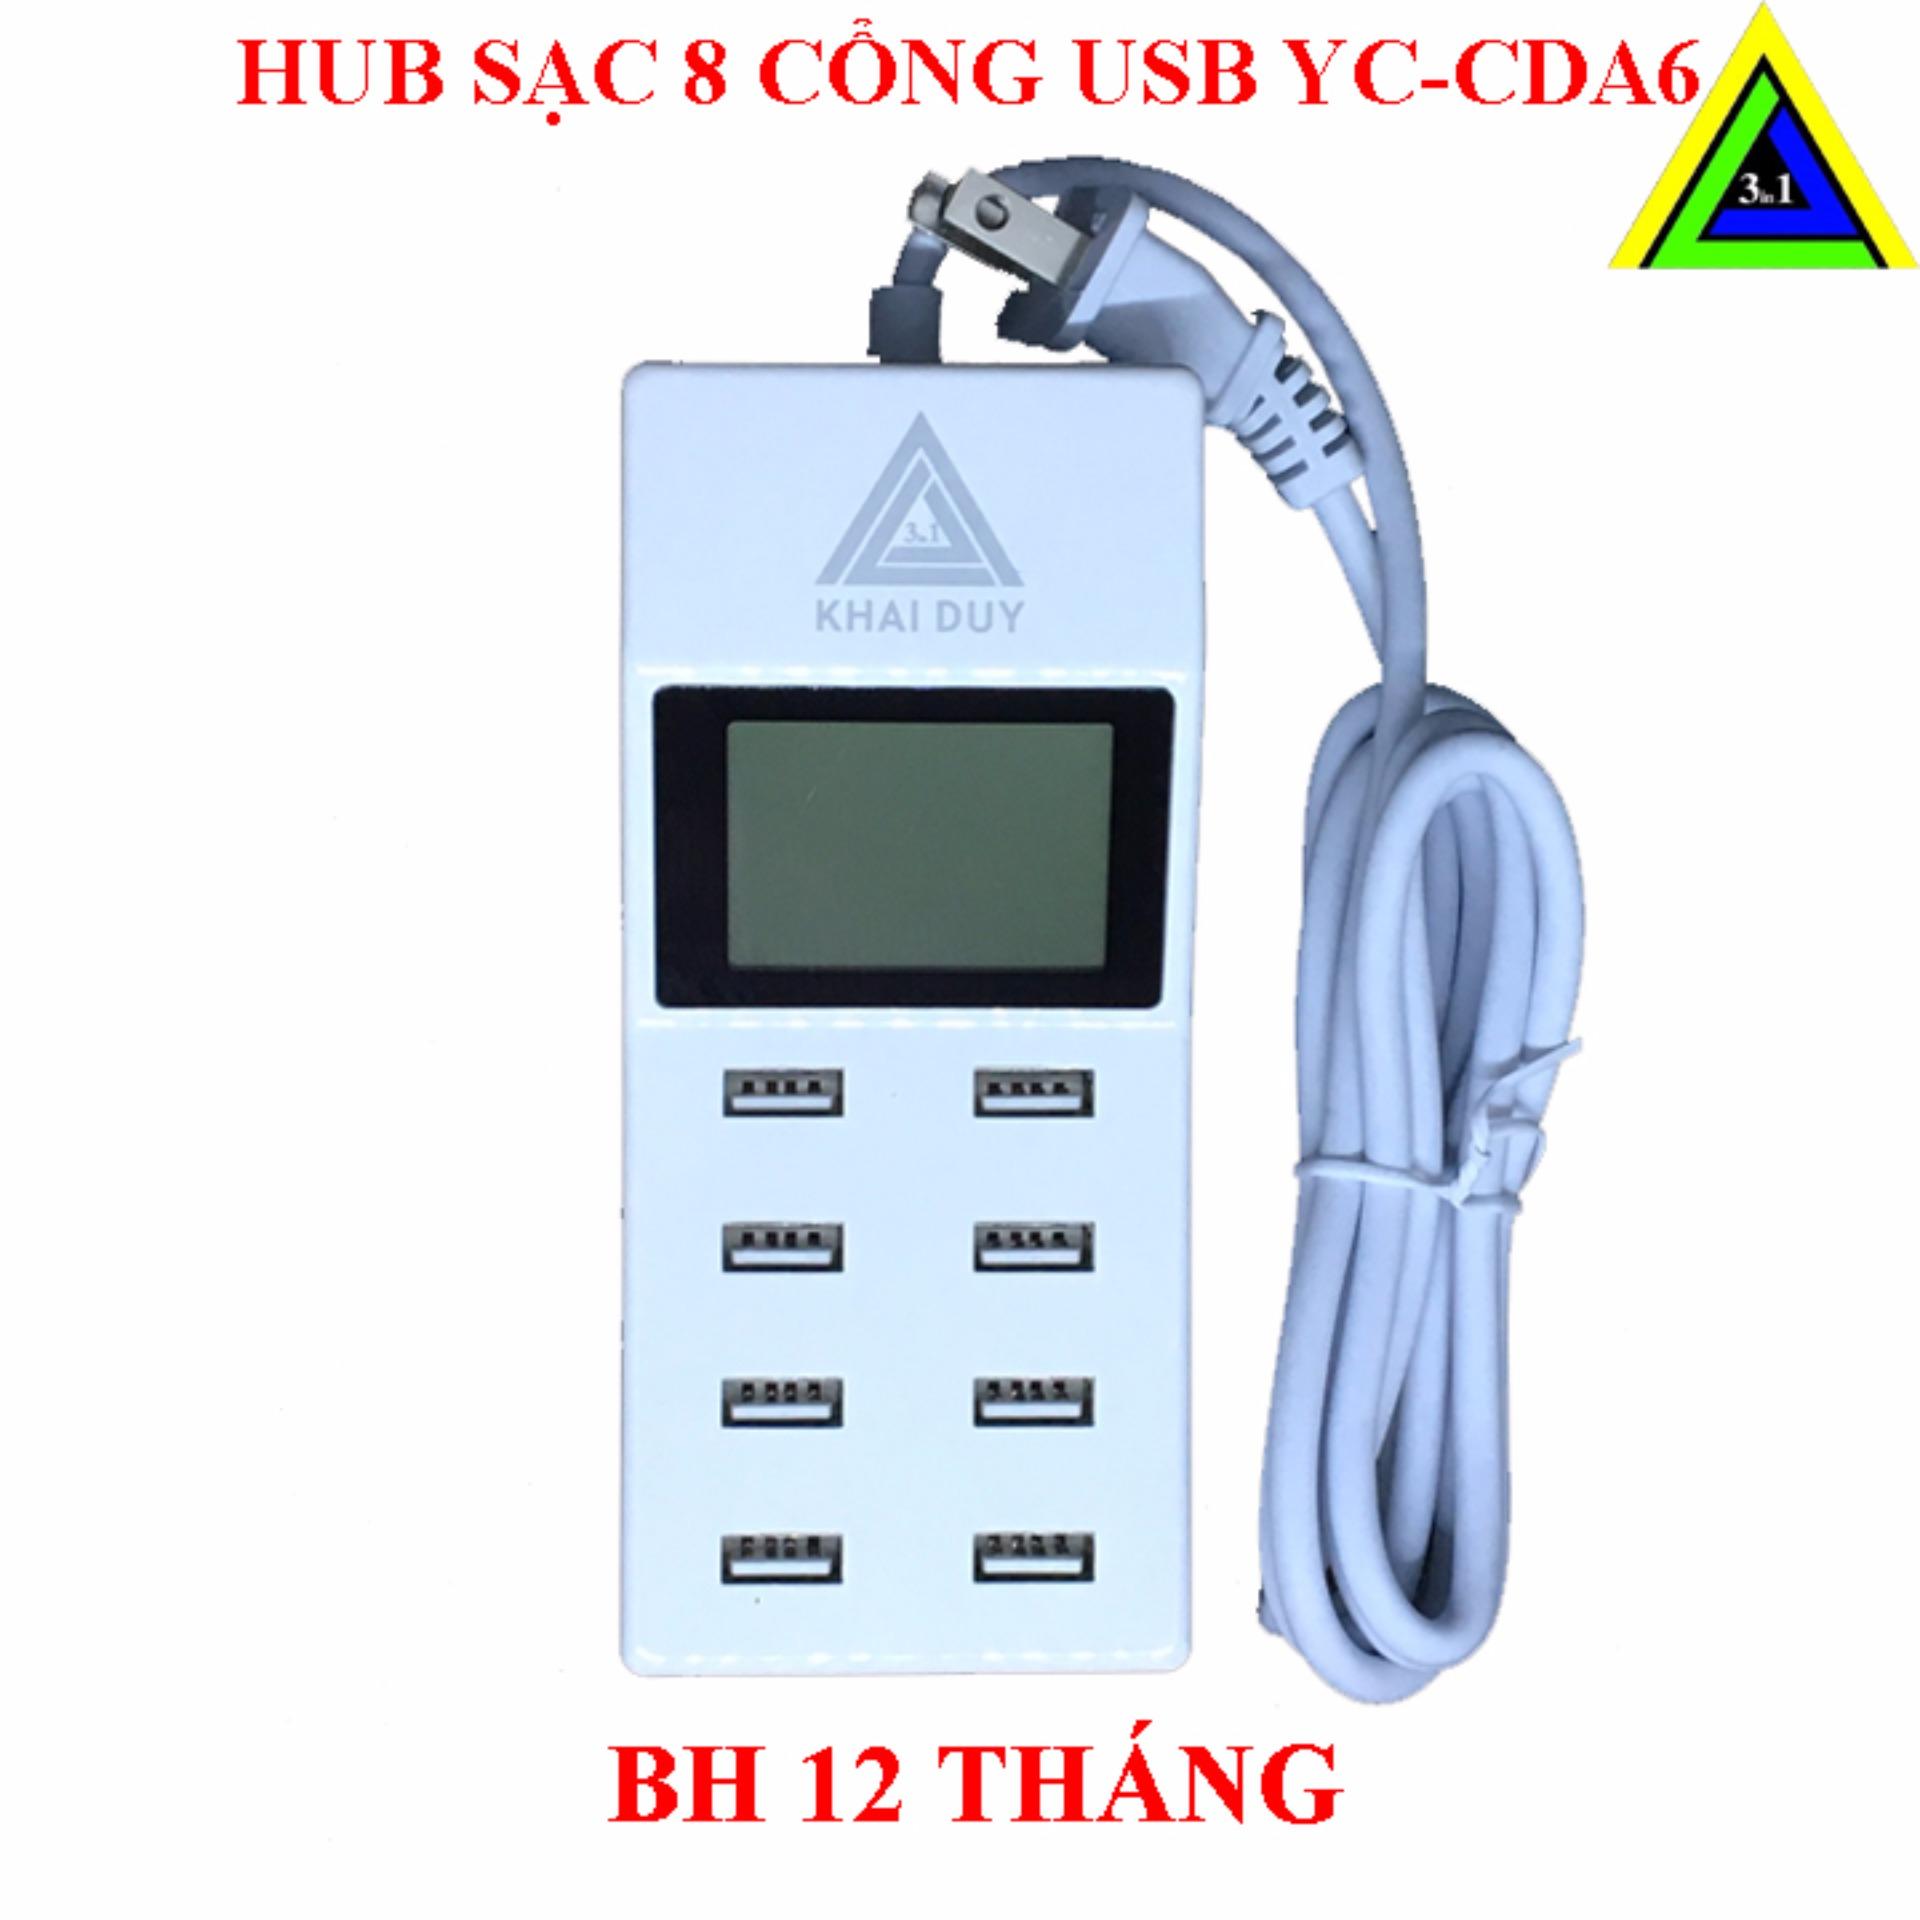 HUB SẠC USB 8 CỔNG YC-CDA6